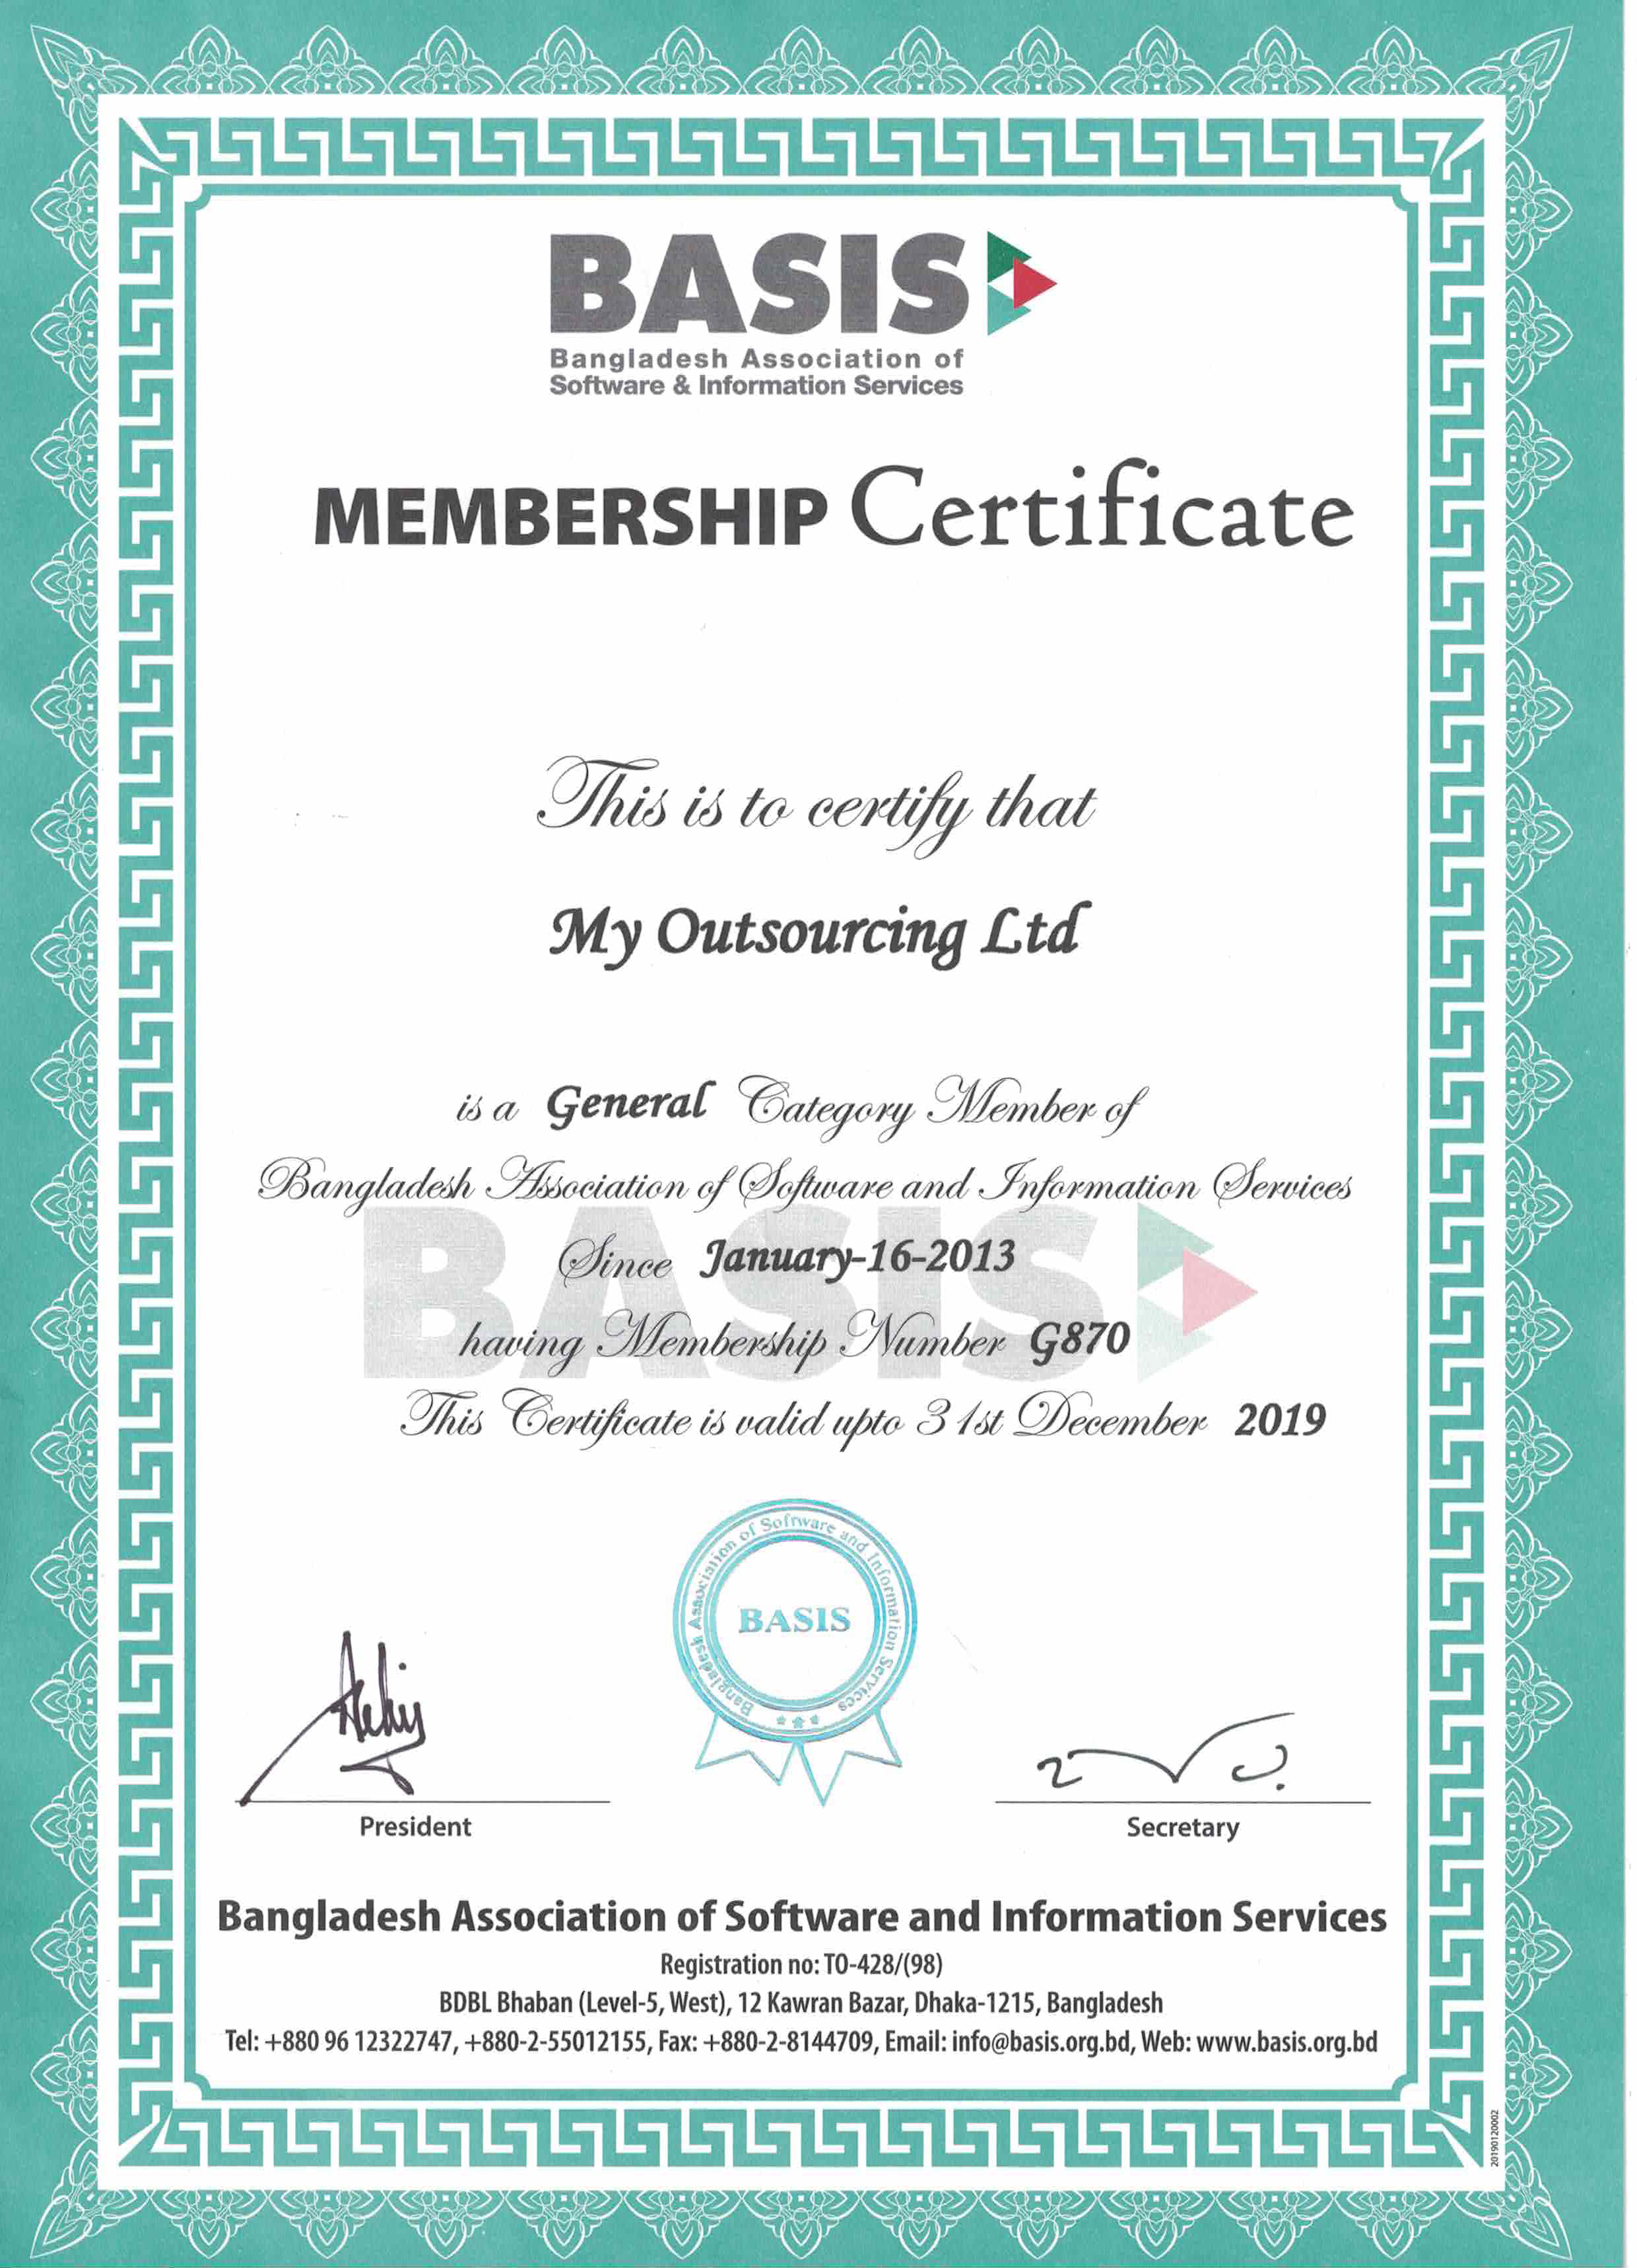 BASIS_membership_Certificate_2019.jpg